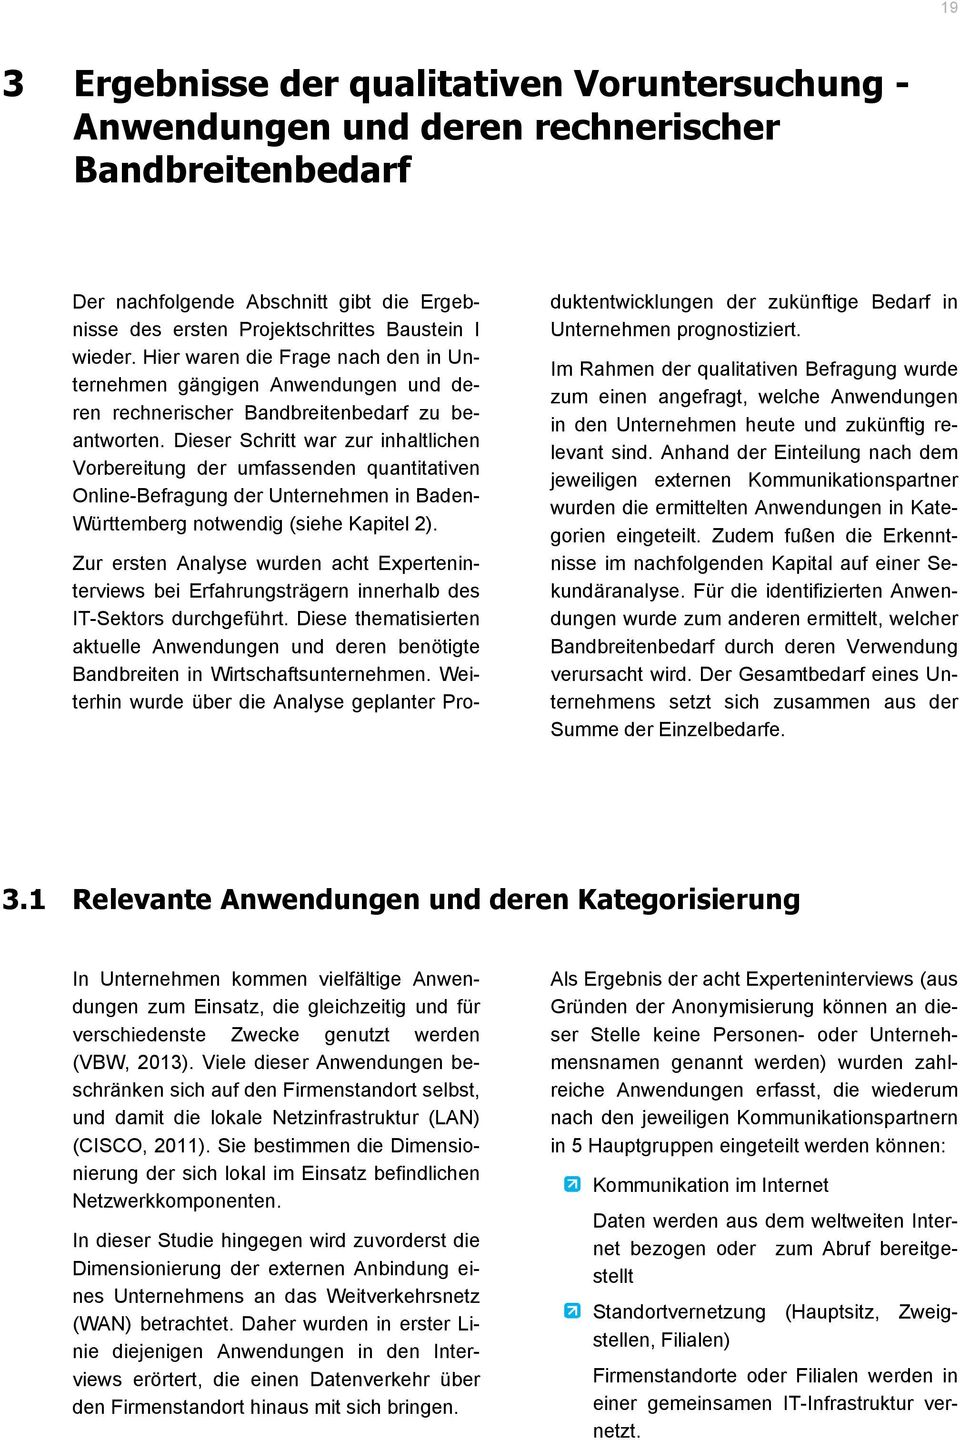 Dieser Shritt war zur inhaltlihen Vorbereitung der umfassenden quantitativen Online-Befragung der Unternehmen in Baden- Württemberg notwendig (siehe Kapitel 2).